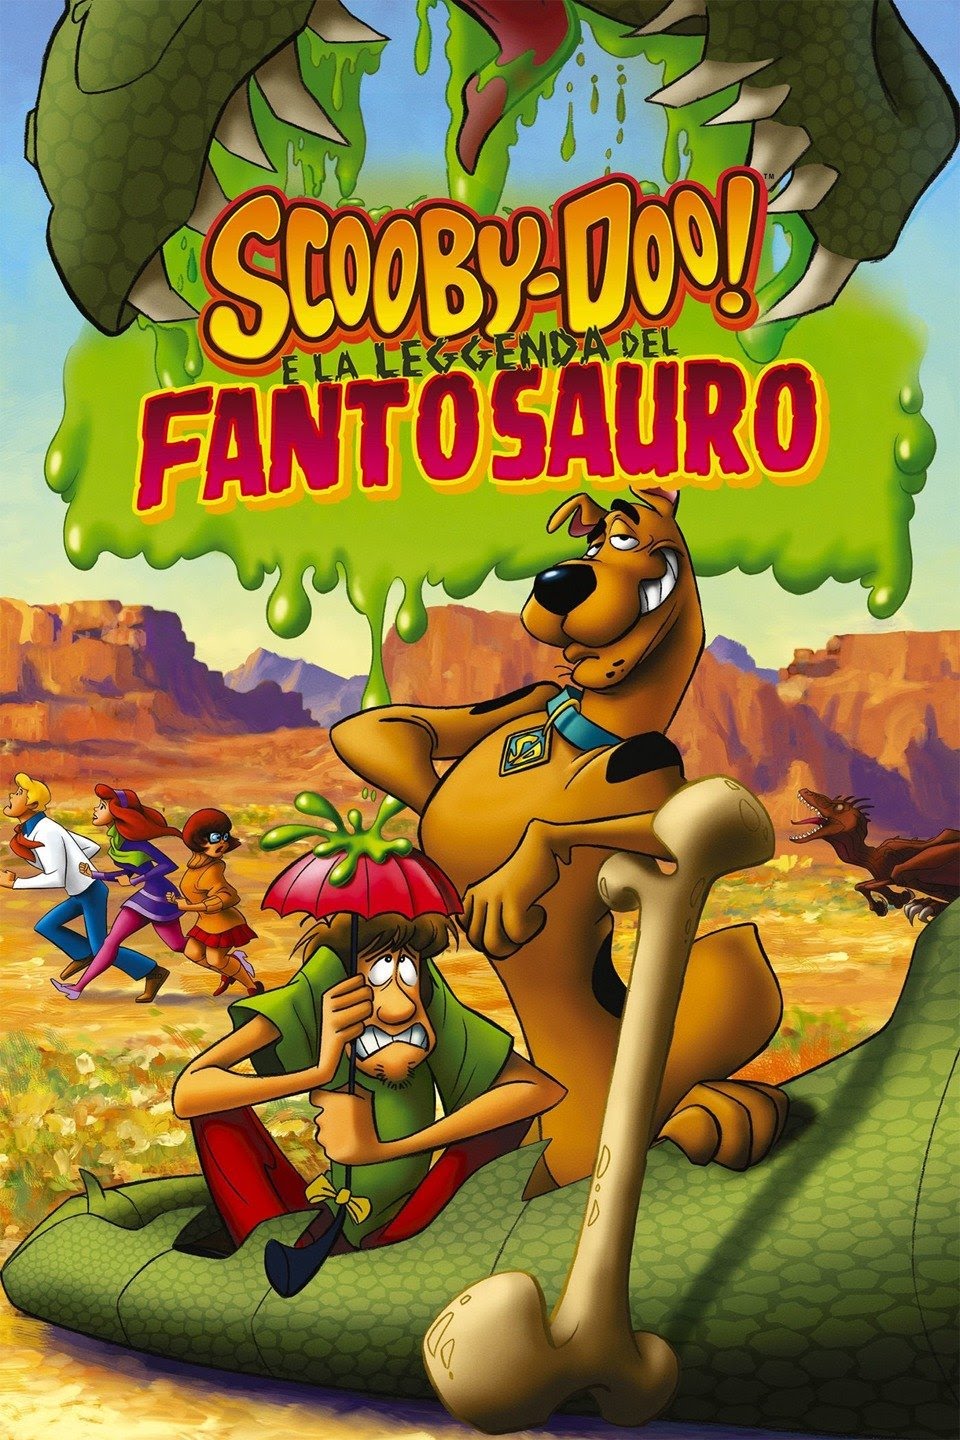 Scooby-Doo! e la leggenda del Fantosauro [HD] (2011)